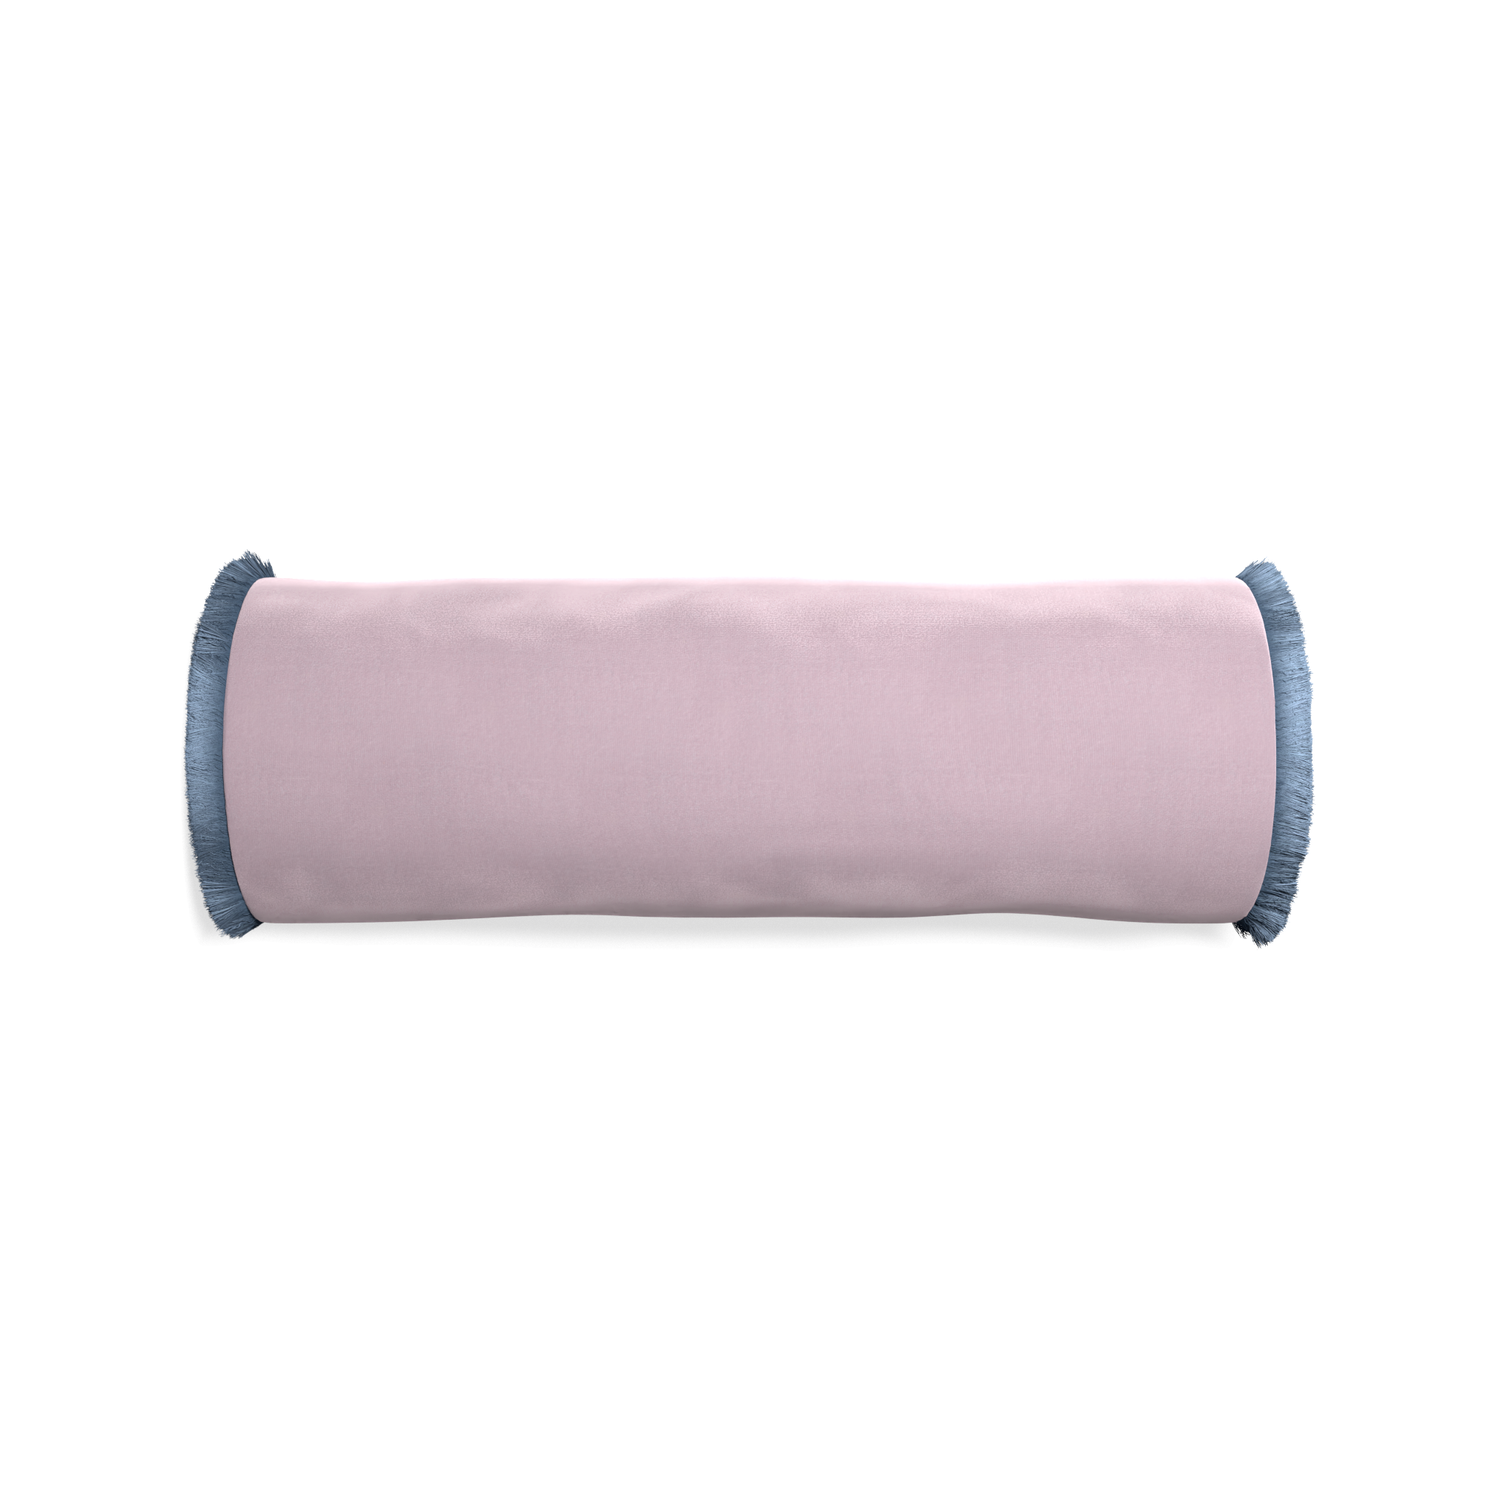 Bolster lilac velvet custom pillow with sky fringe on white background